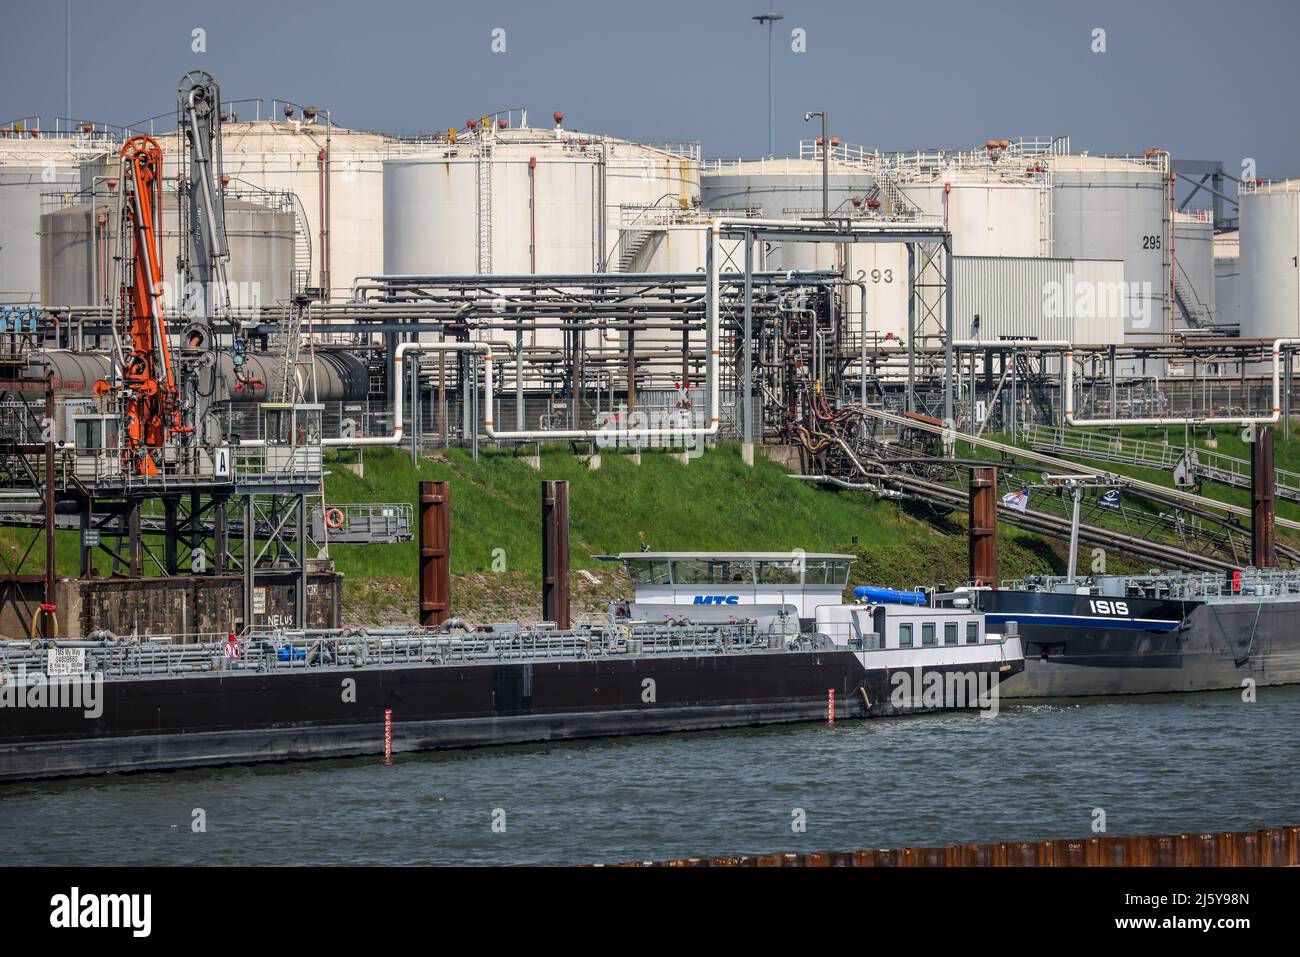 Duisburg, Rhénanie-du-Nord-Westphalie, Allemagne - Port de Duisburg, Duisburg Ruhrort, île pétrolière, tankers devant la ferme-réservoir pour les produits d'huile minérale, combustible Banque D'Images